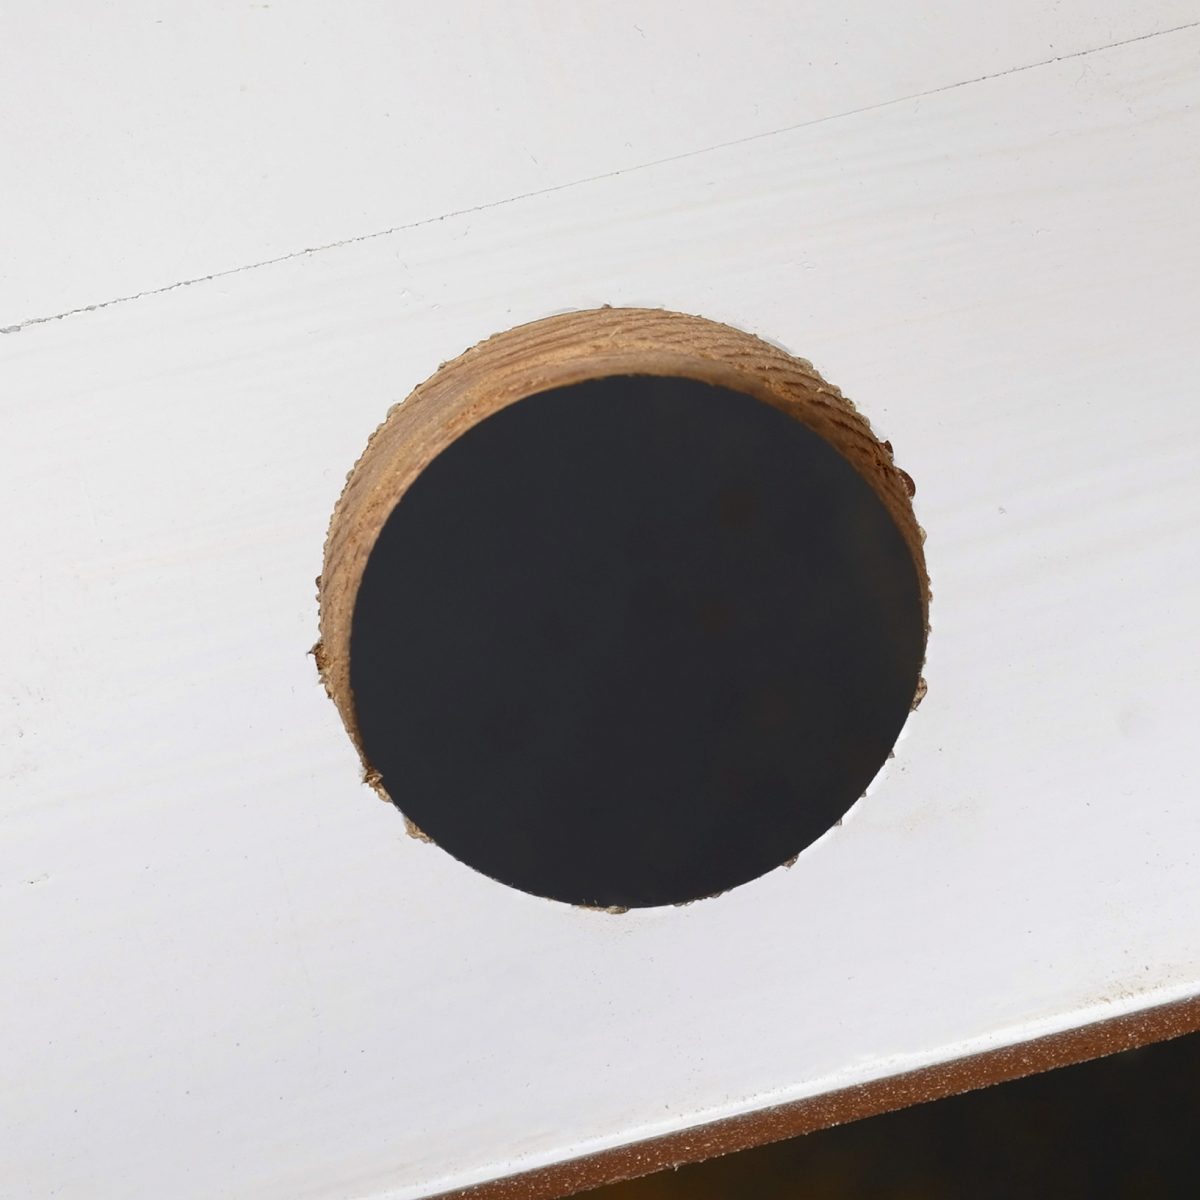 How To Use A Hole Saw